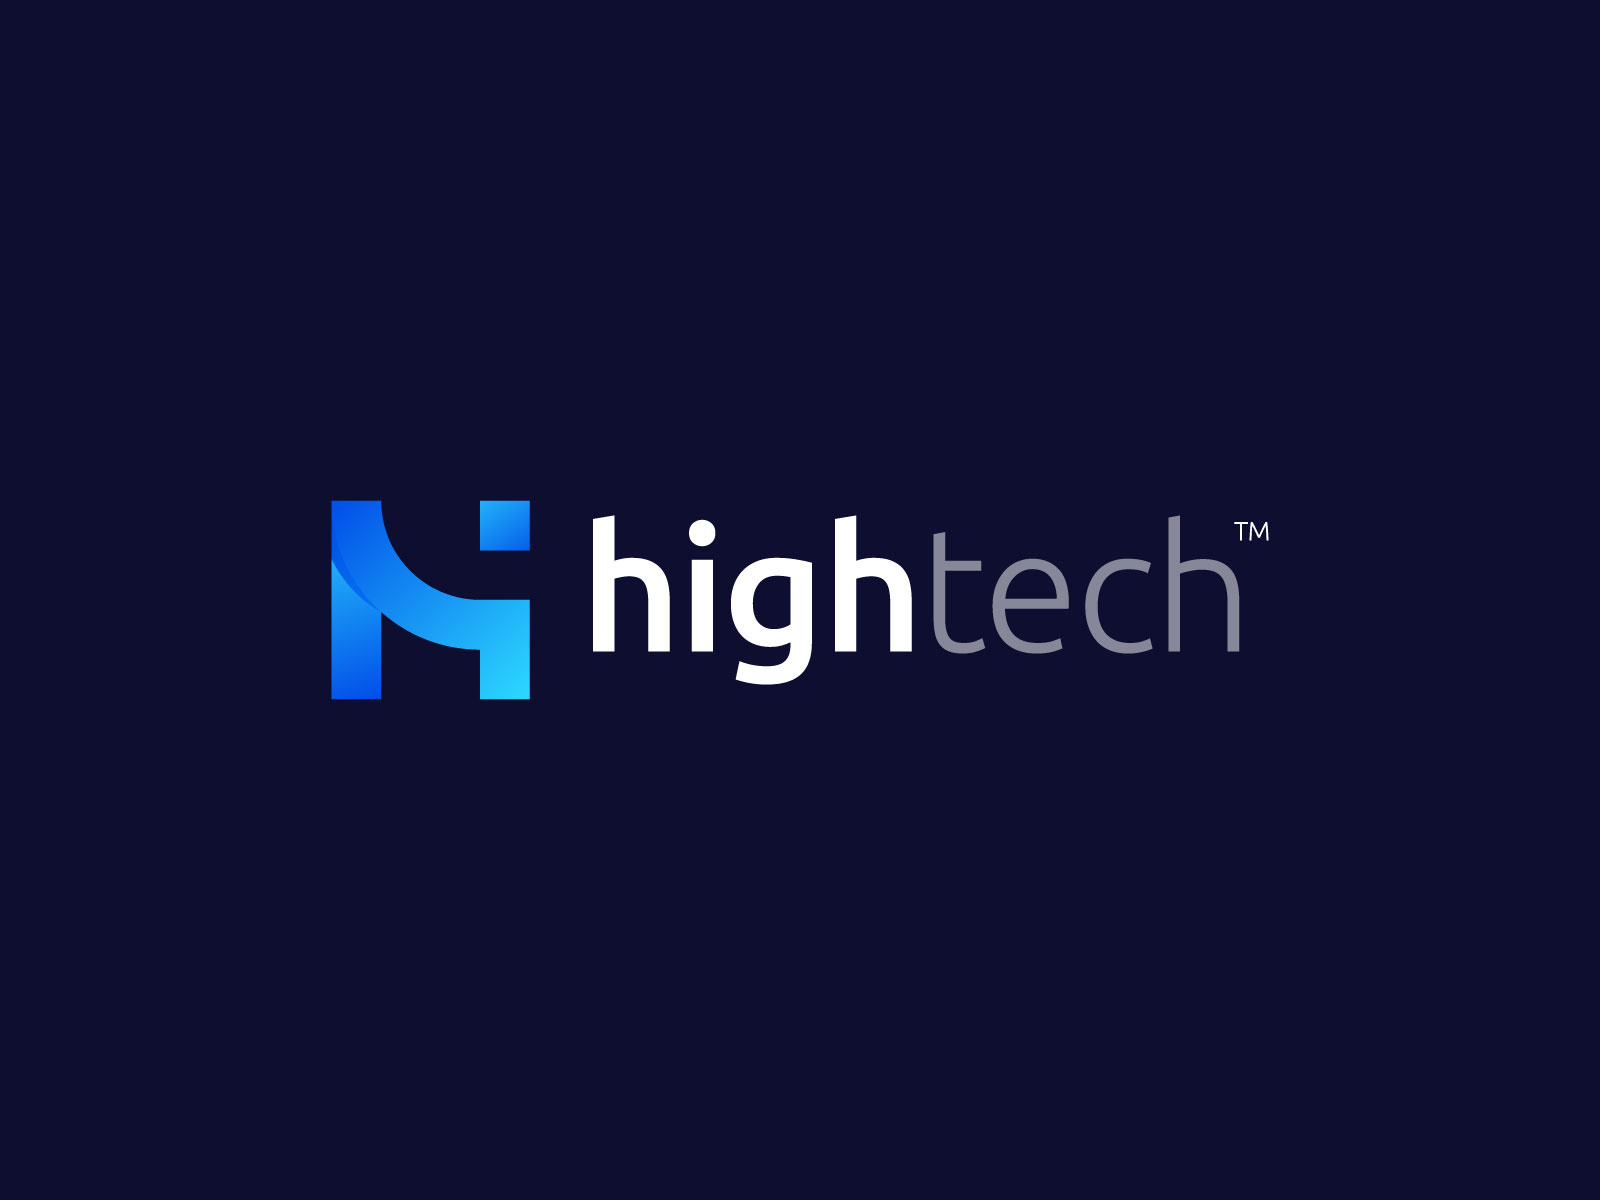 Hightech Logo Design - H + Tech Logo Mark by Freelancer Iqbal for ...